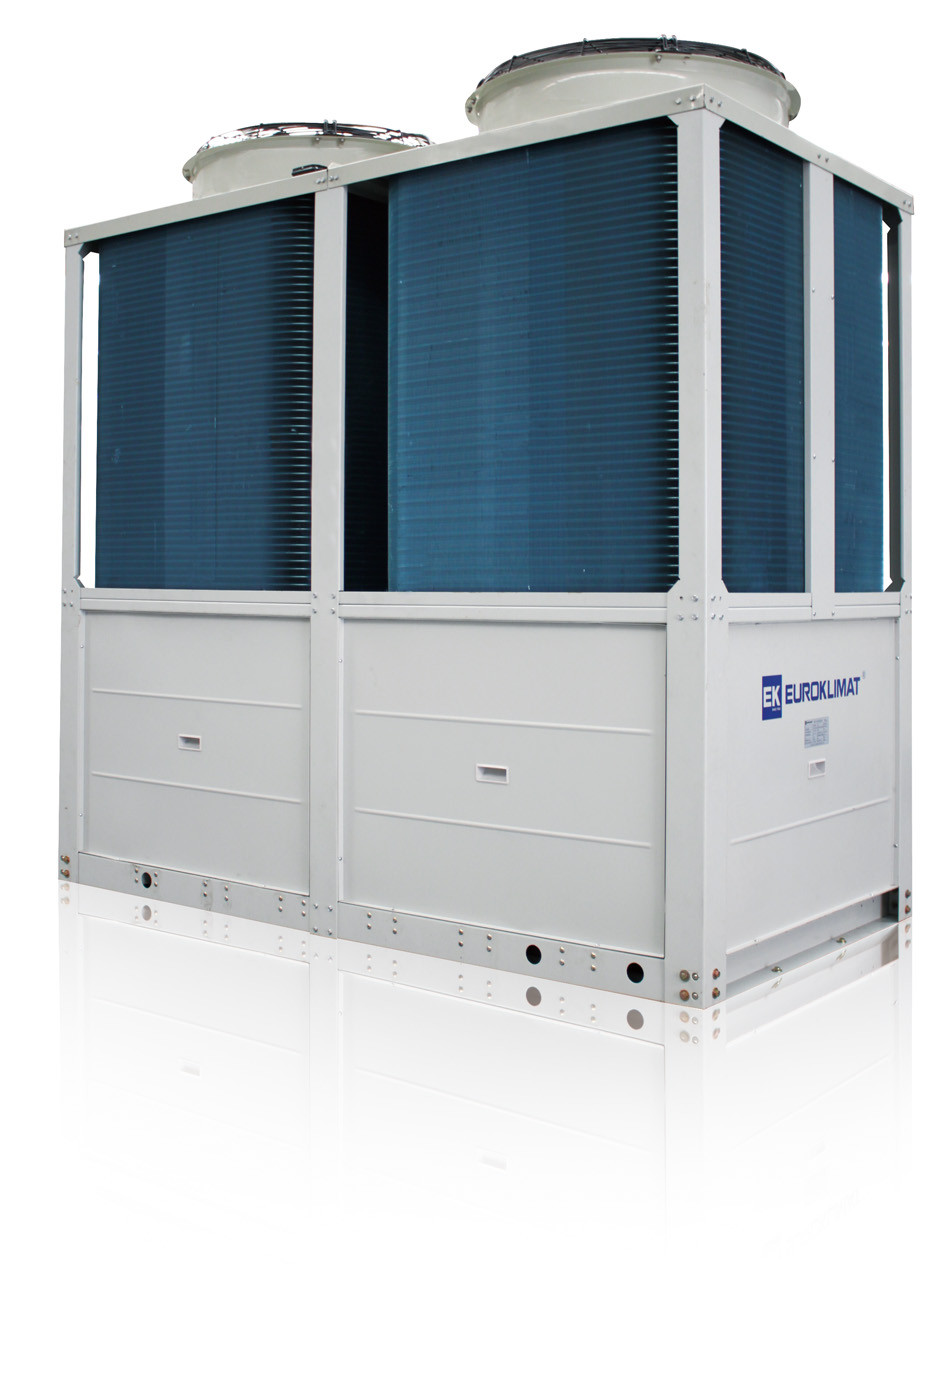 Χαμηλού θορύβου EXV μονάδα 500kW συσκευασίας αντλιών θερμότητας ελέγχου δροσισμένη αέρας - 800kW